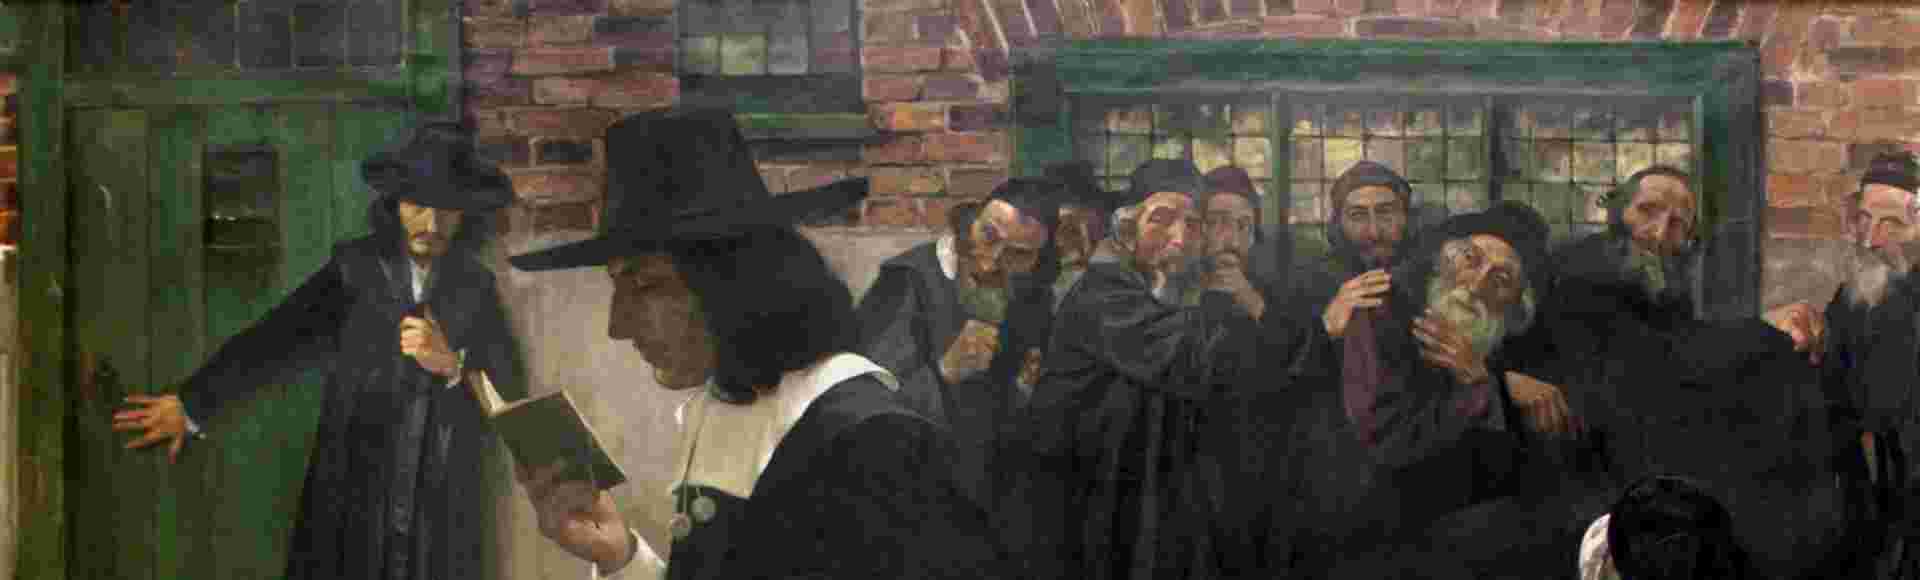 Painting of Spinoza.